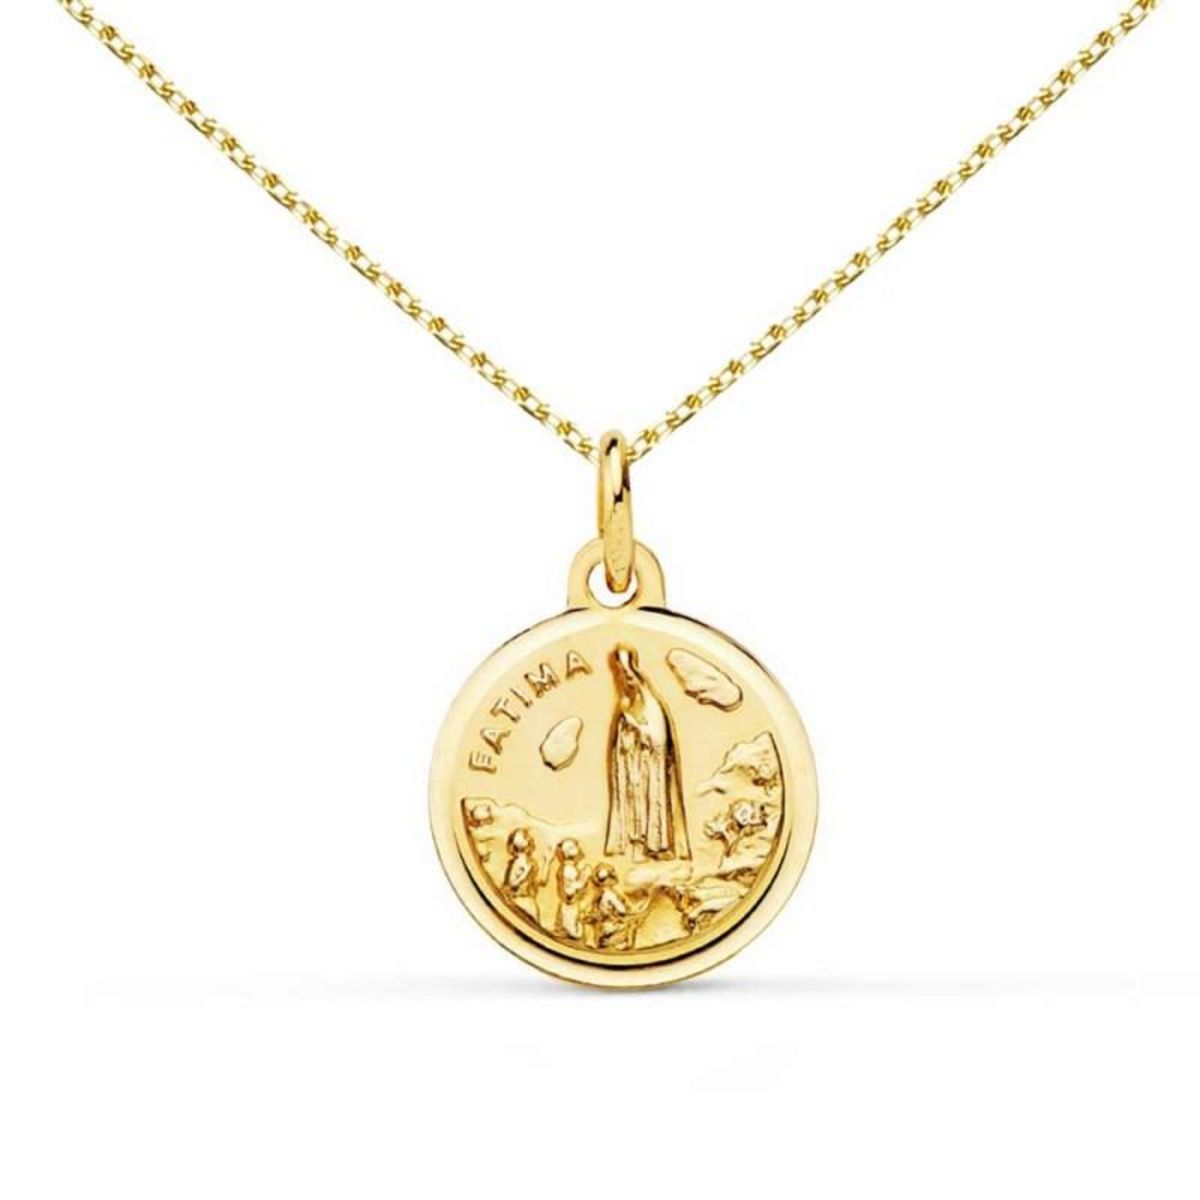  Collier - Médaille Vierge de Fatima Or Jaune - Chaîne Dorée - Gravure Offerte